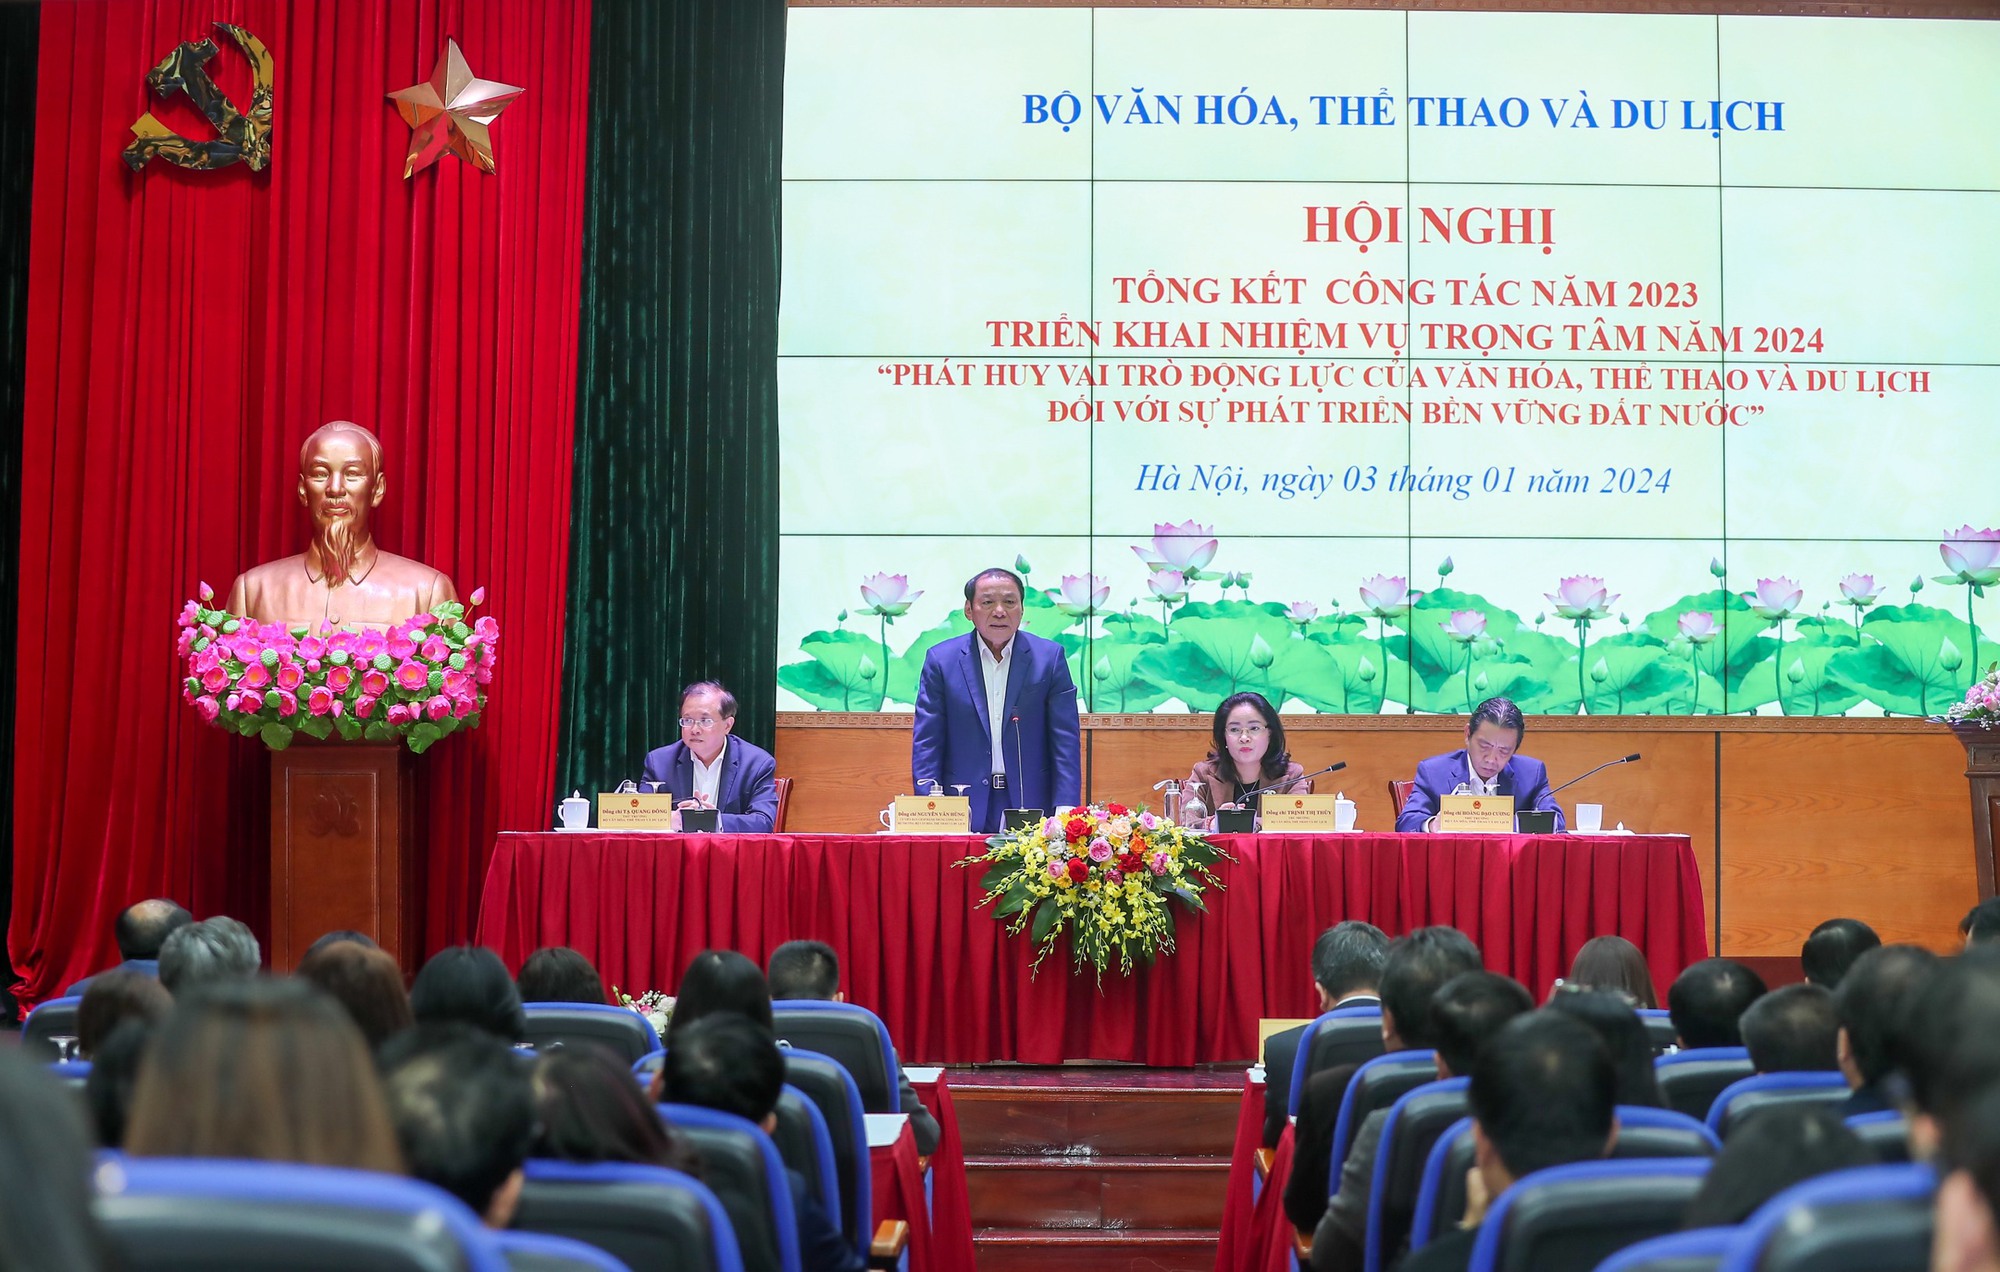 Bộ trưởng Nguyễn Văn Hùng: "Có giấc mơ lớn nhưng phải biết thức dậy để hành động"